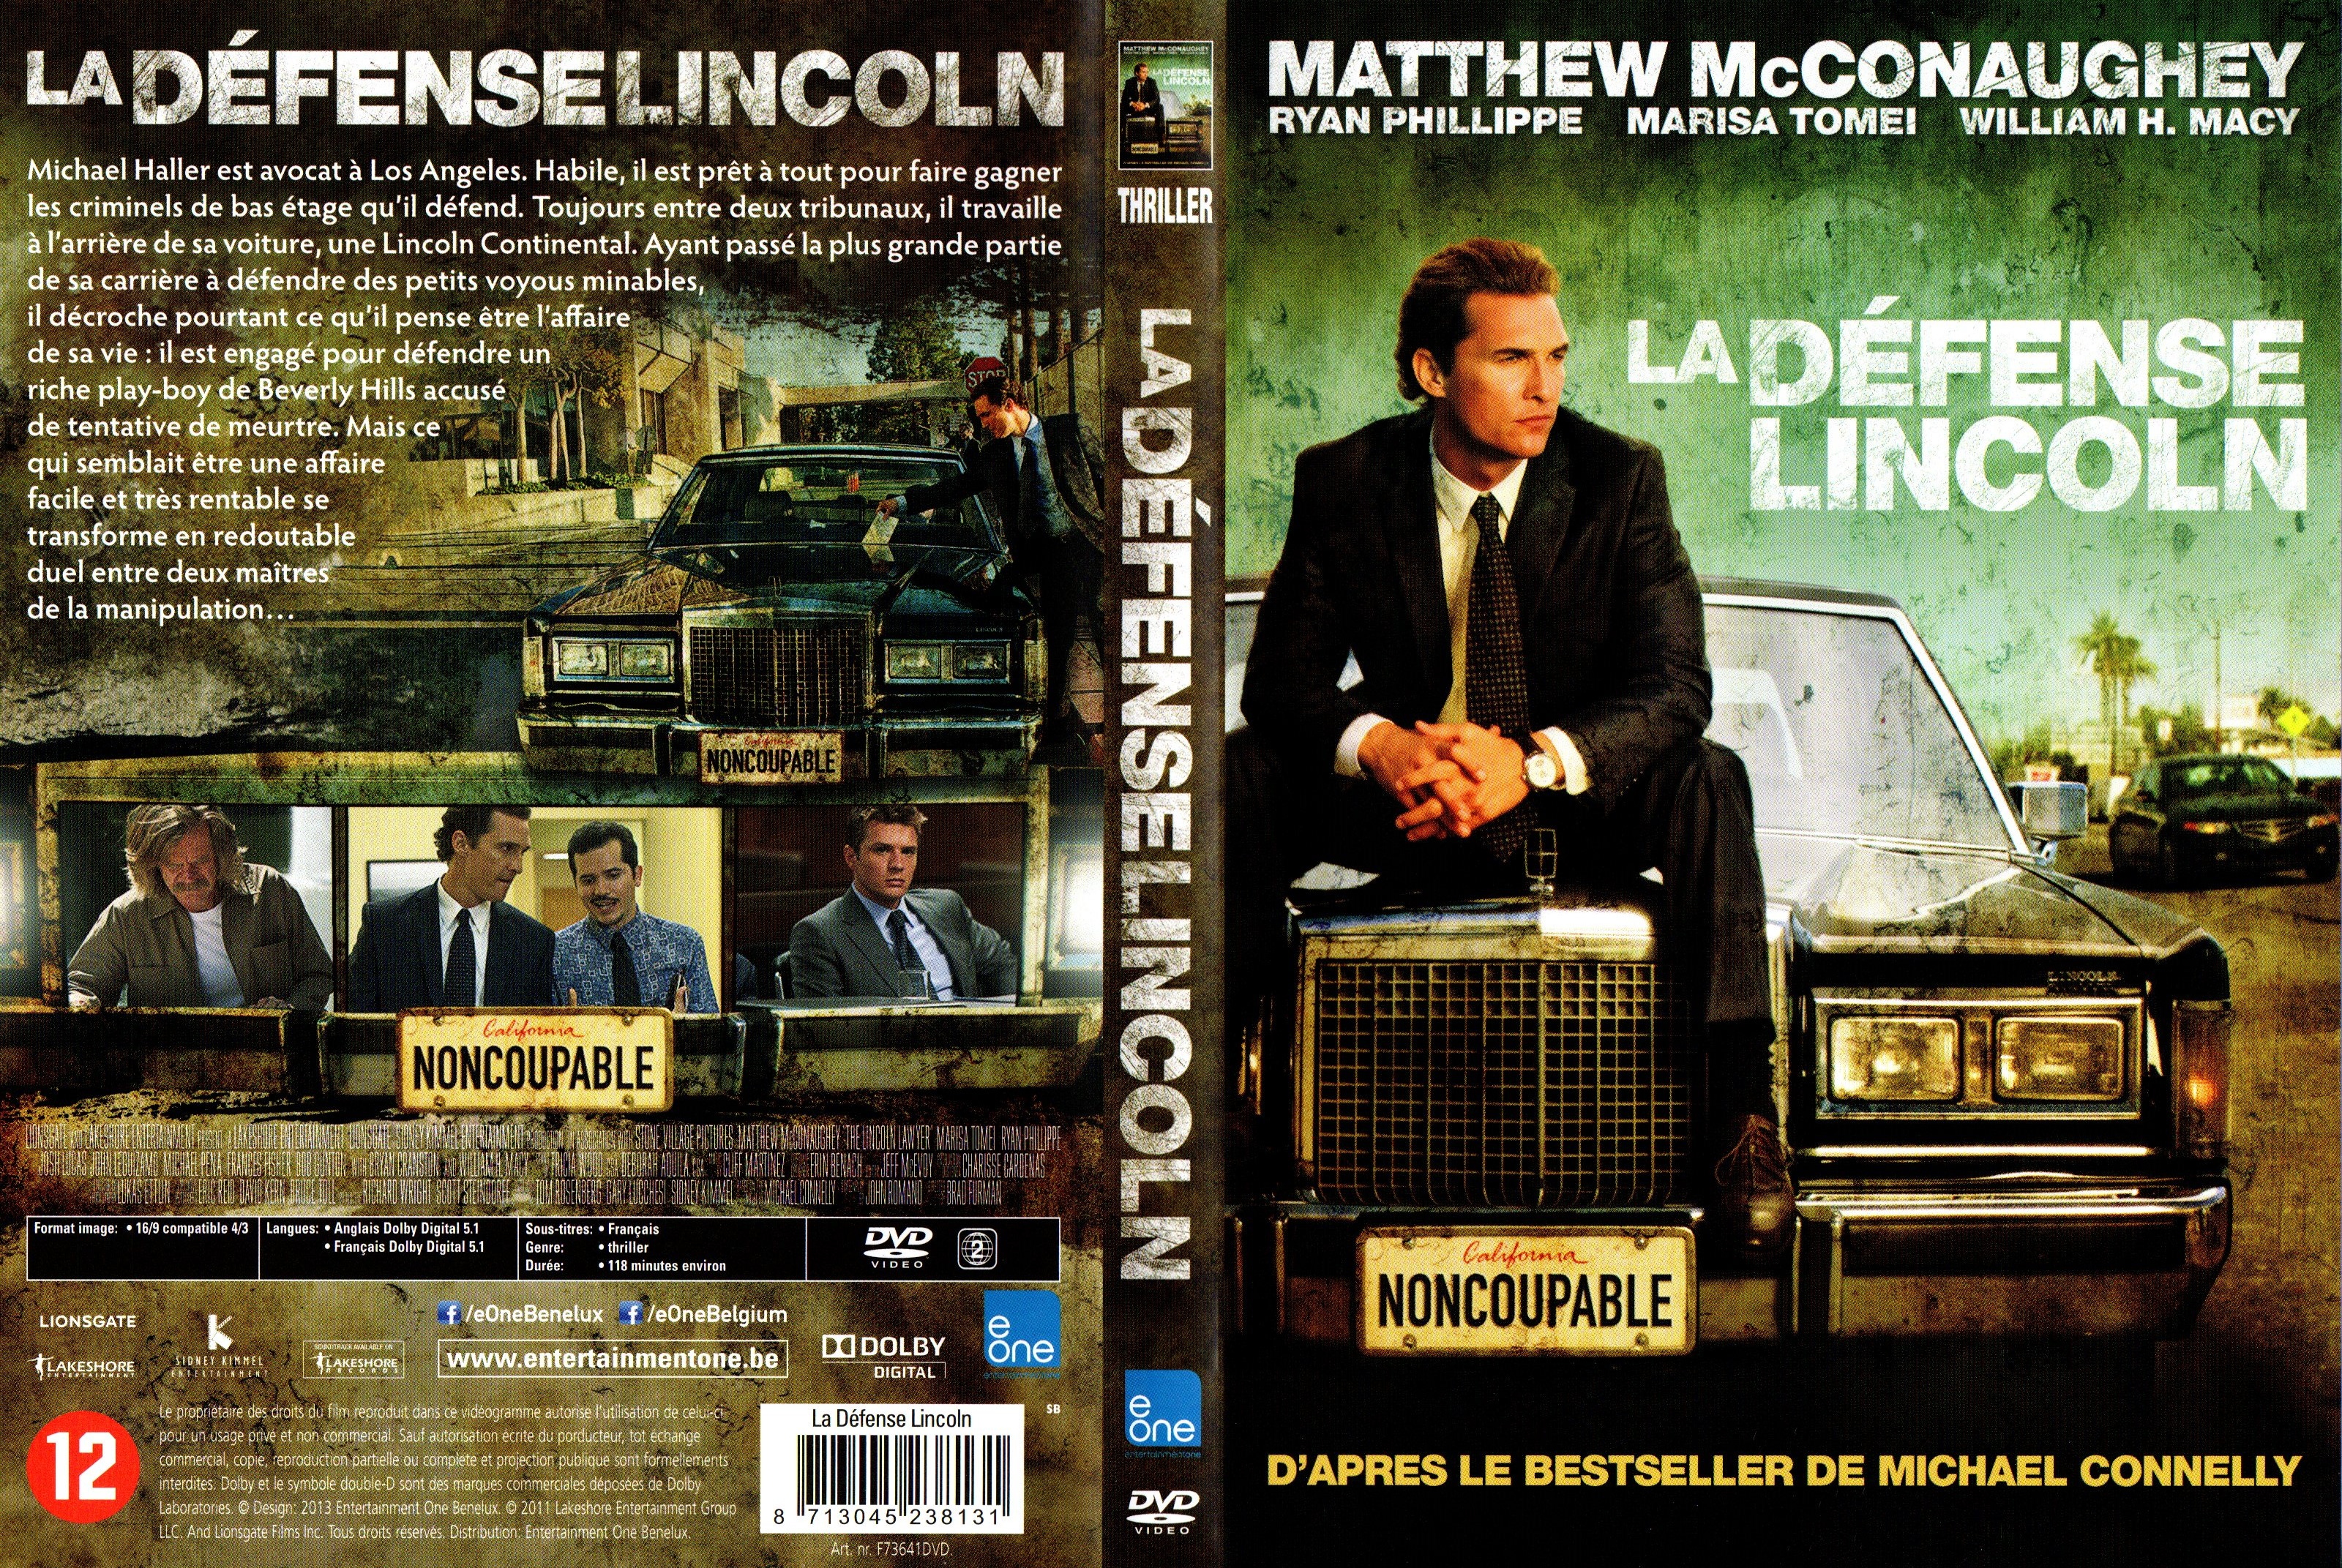 Jaquette DVD La defense Lincoln